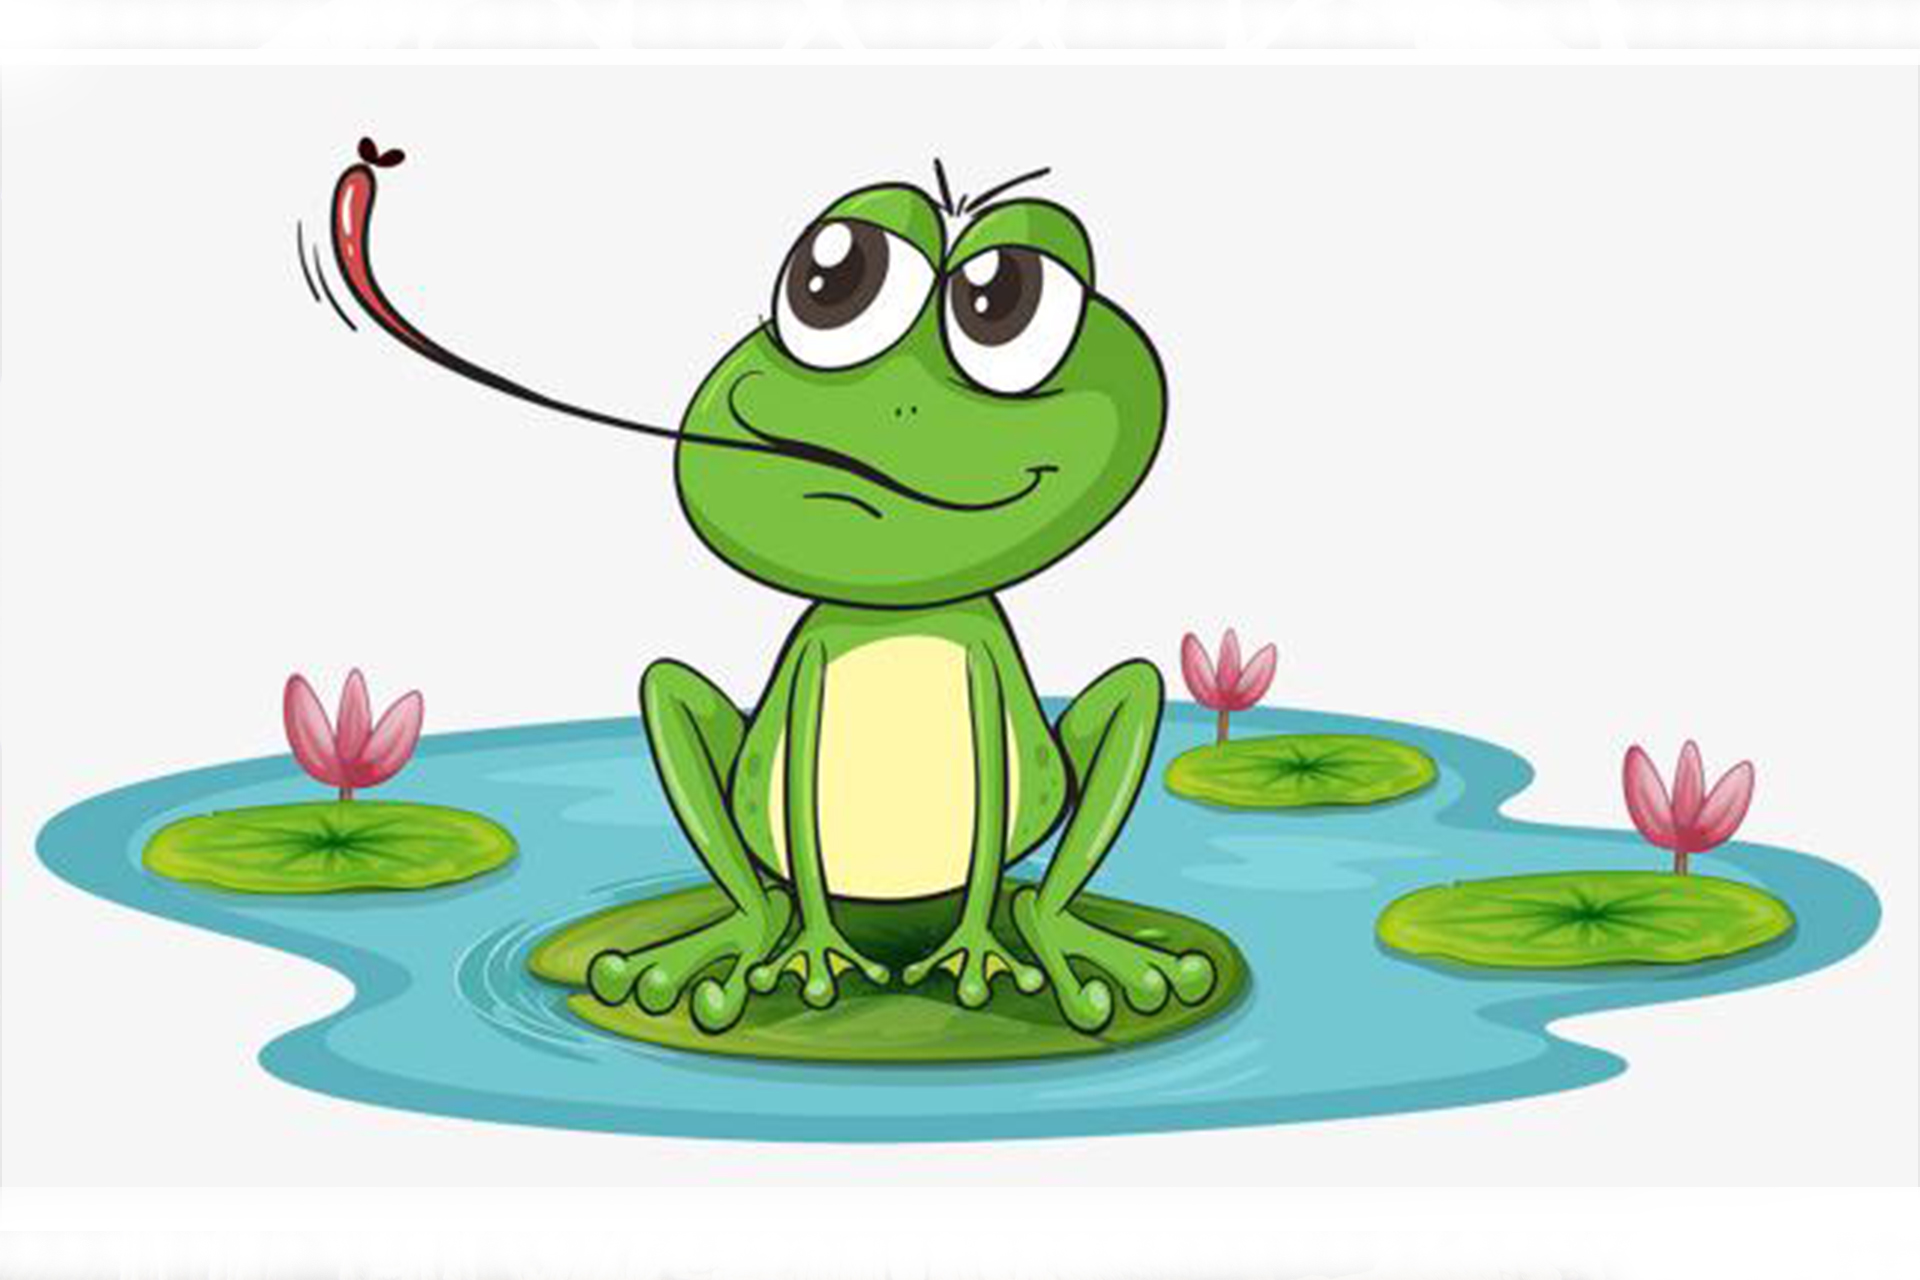 可爱小青蛙图片-可爱小青蛙素材免费下载-包图网